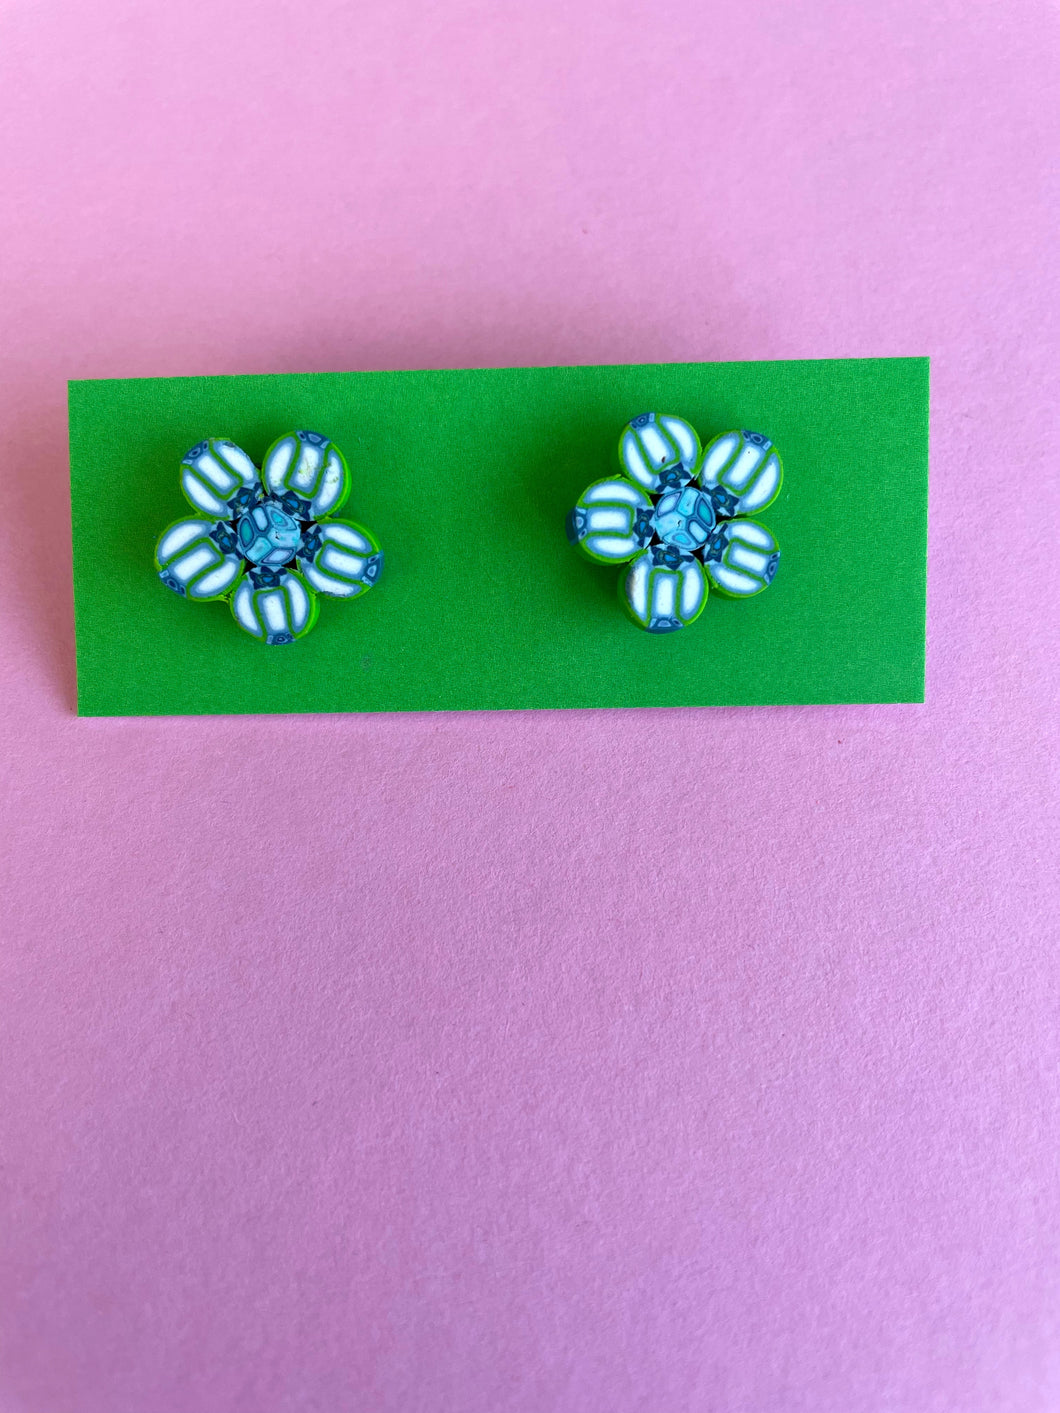 Stud earrings in green and blue flower shape